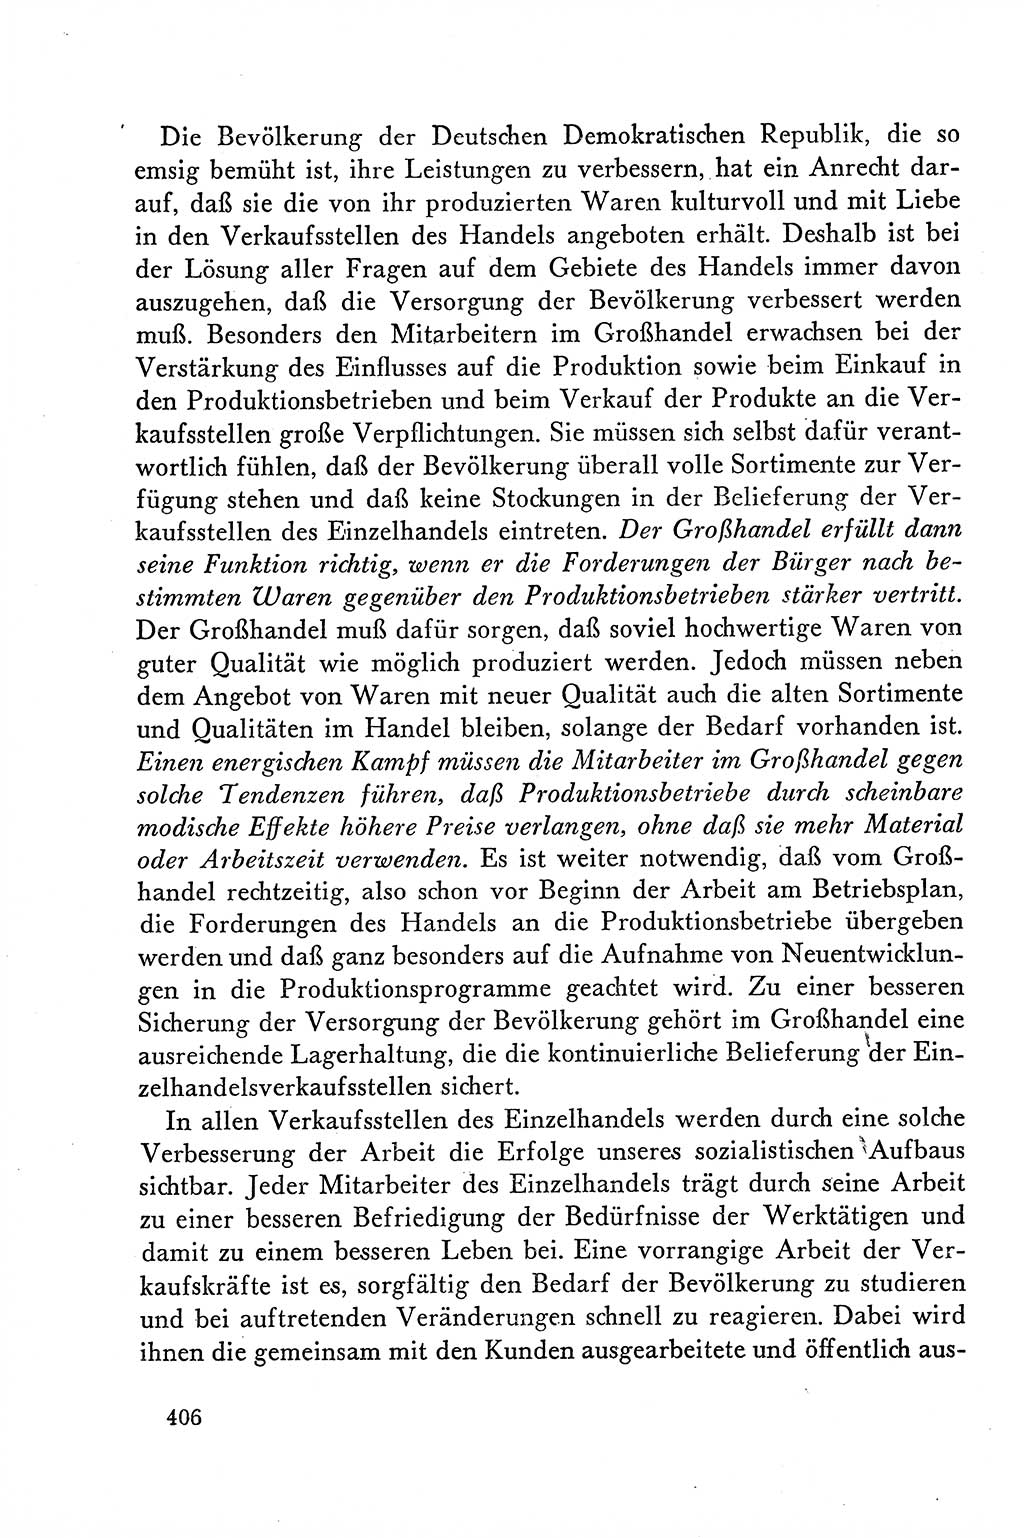 Dokumente der Sozialistischen Einheitspartei Deutschlands (SED) [Deutsche Demokratische Republik (DDR)] 1958-1959, Seite 406 (Dok. SED DDR 1958-1959, S. 406)